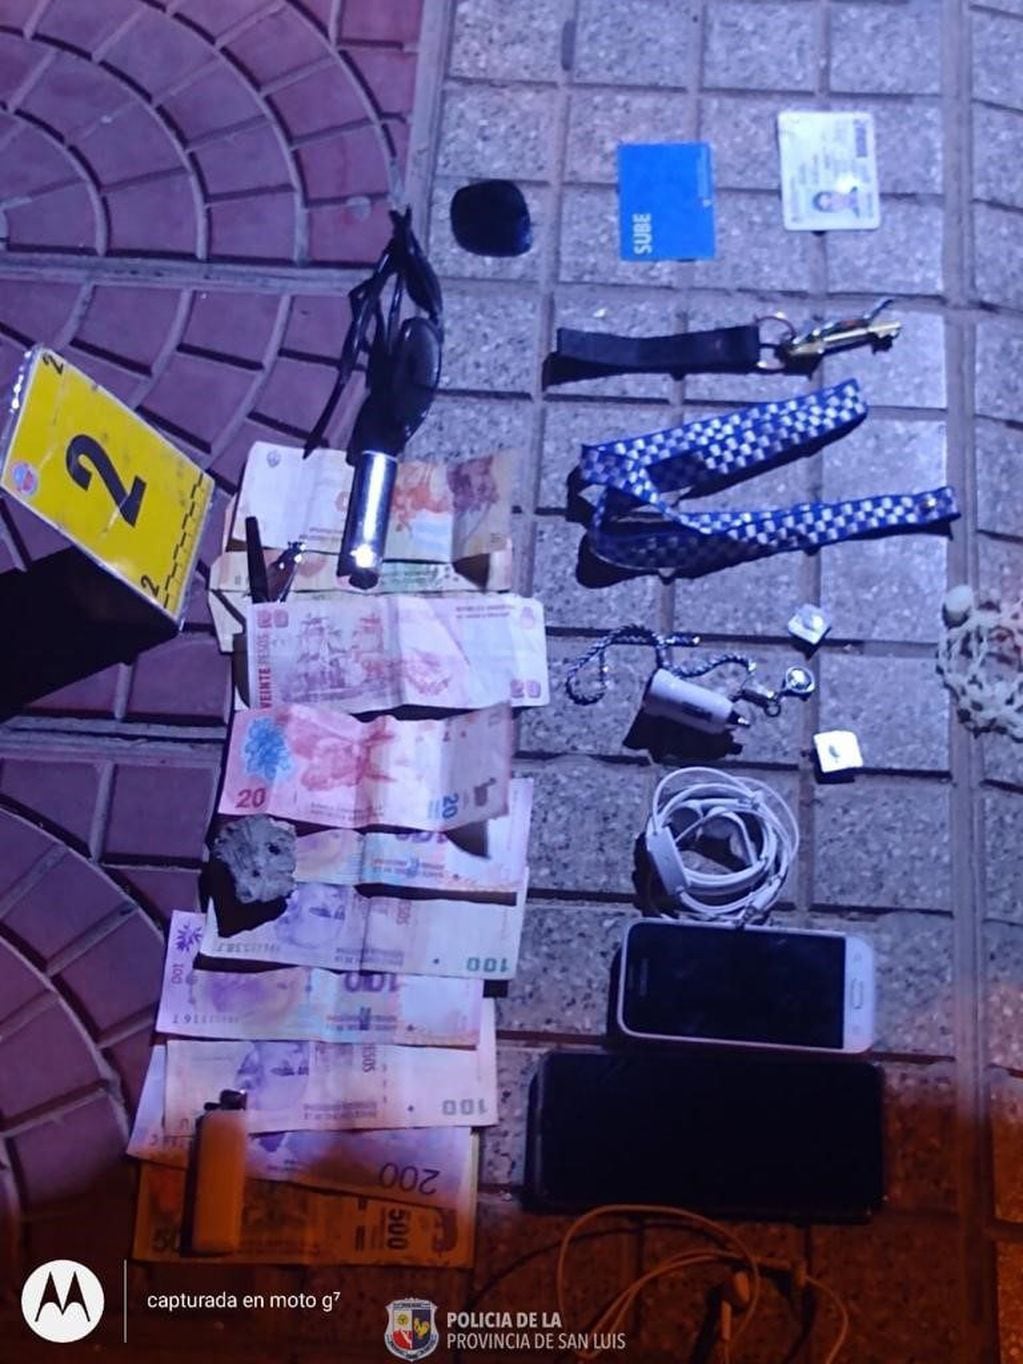 Elementos robados que fueron recuperados por la policía en San Luis.